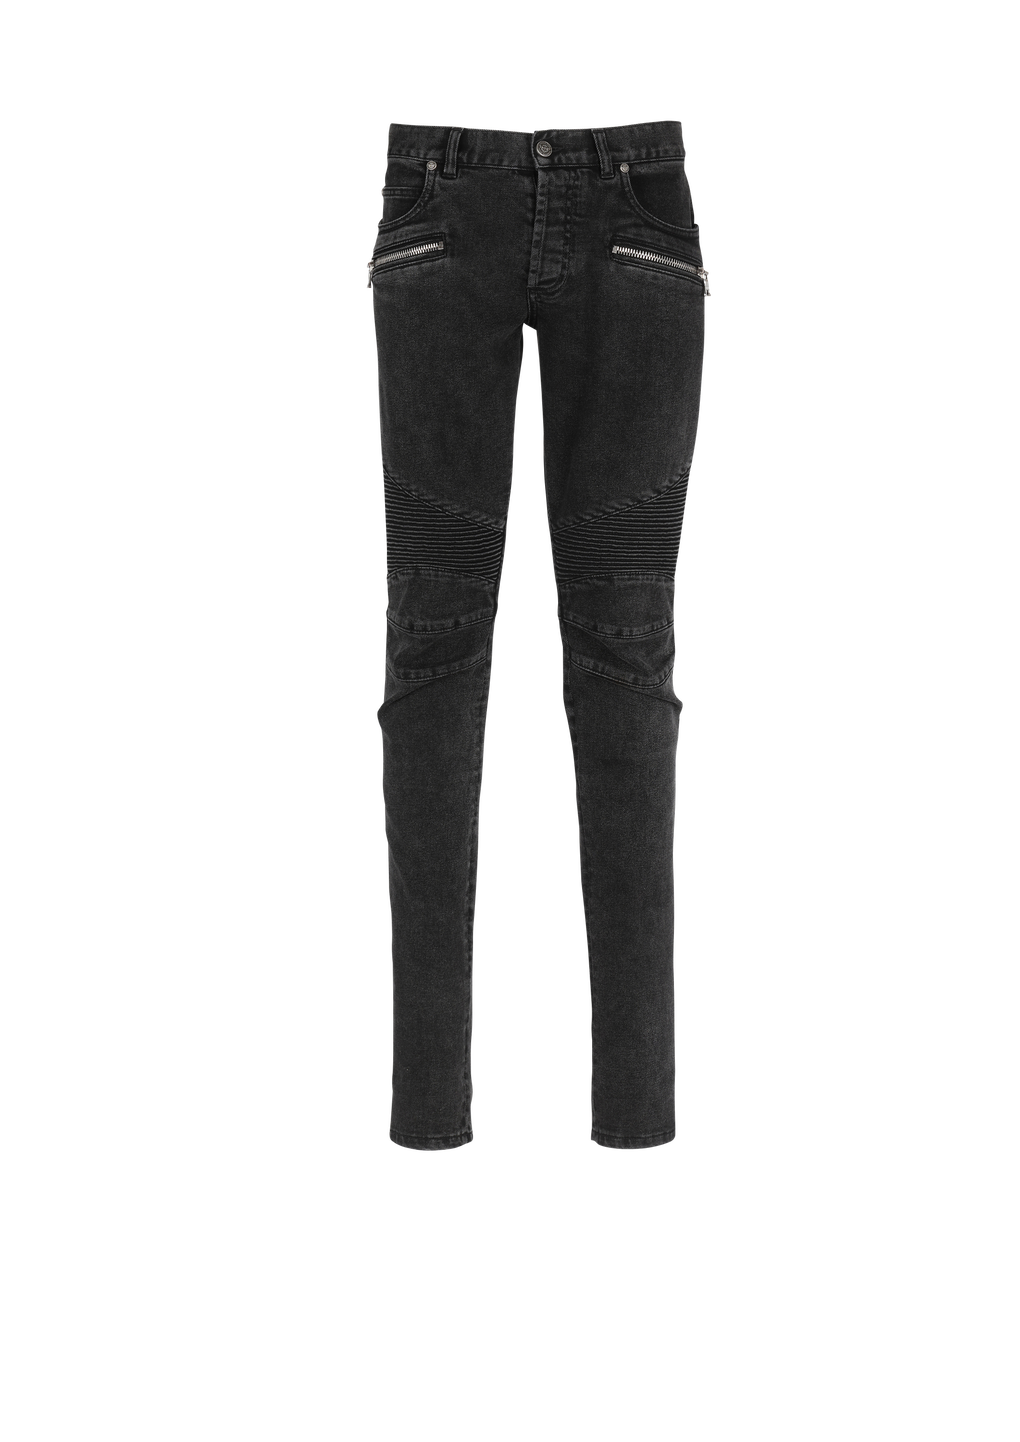 Jeans slim in cotone delavé con inserti a coste e monogramma Balmain sull’orlo, nero, hi-res